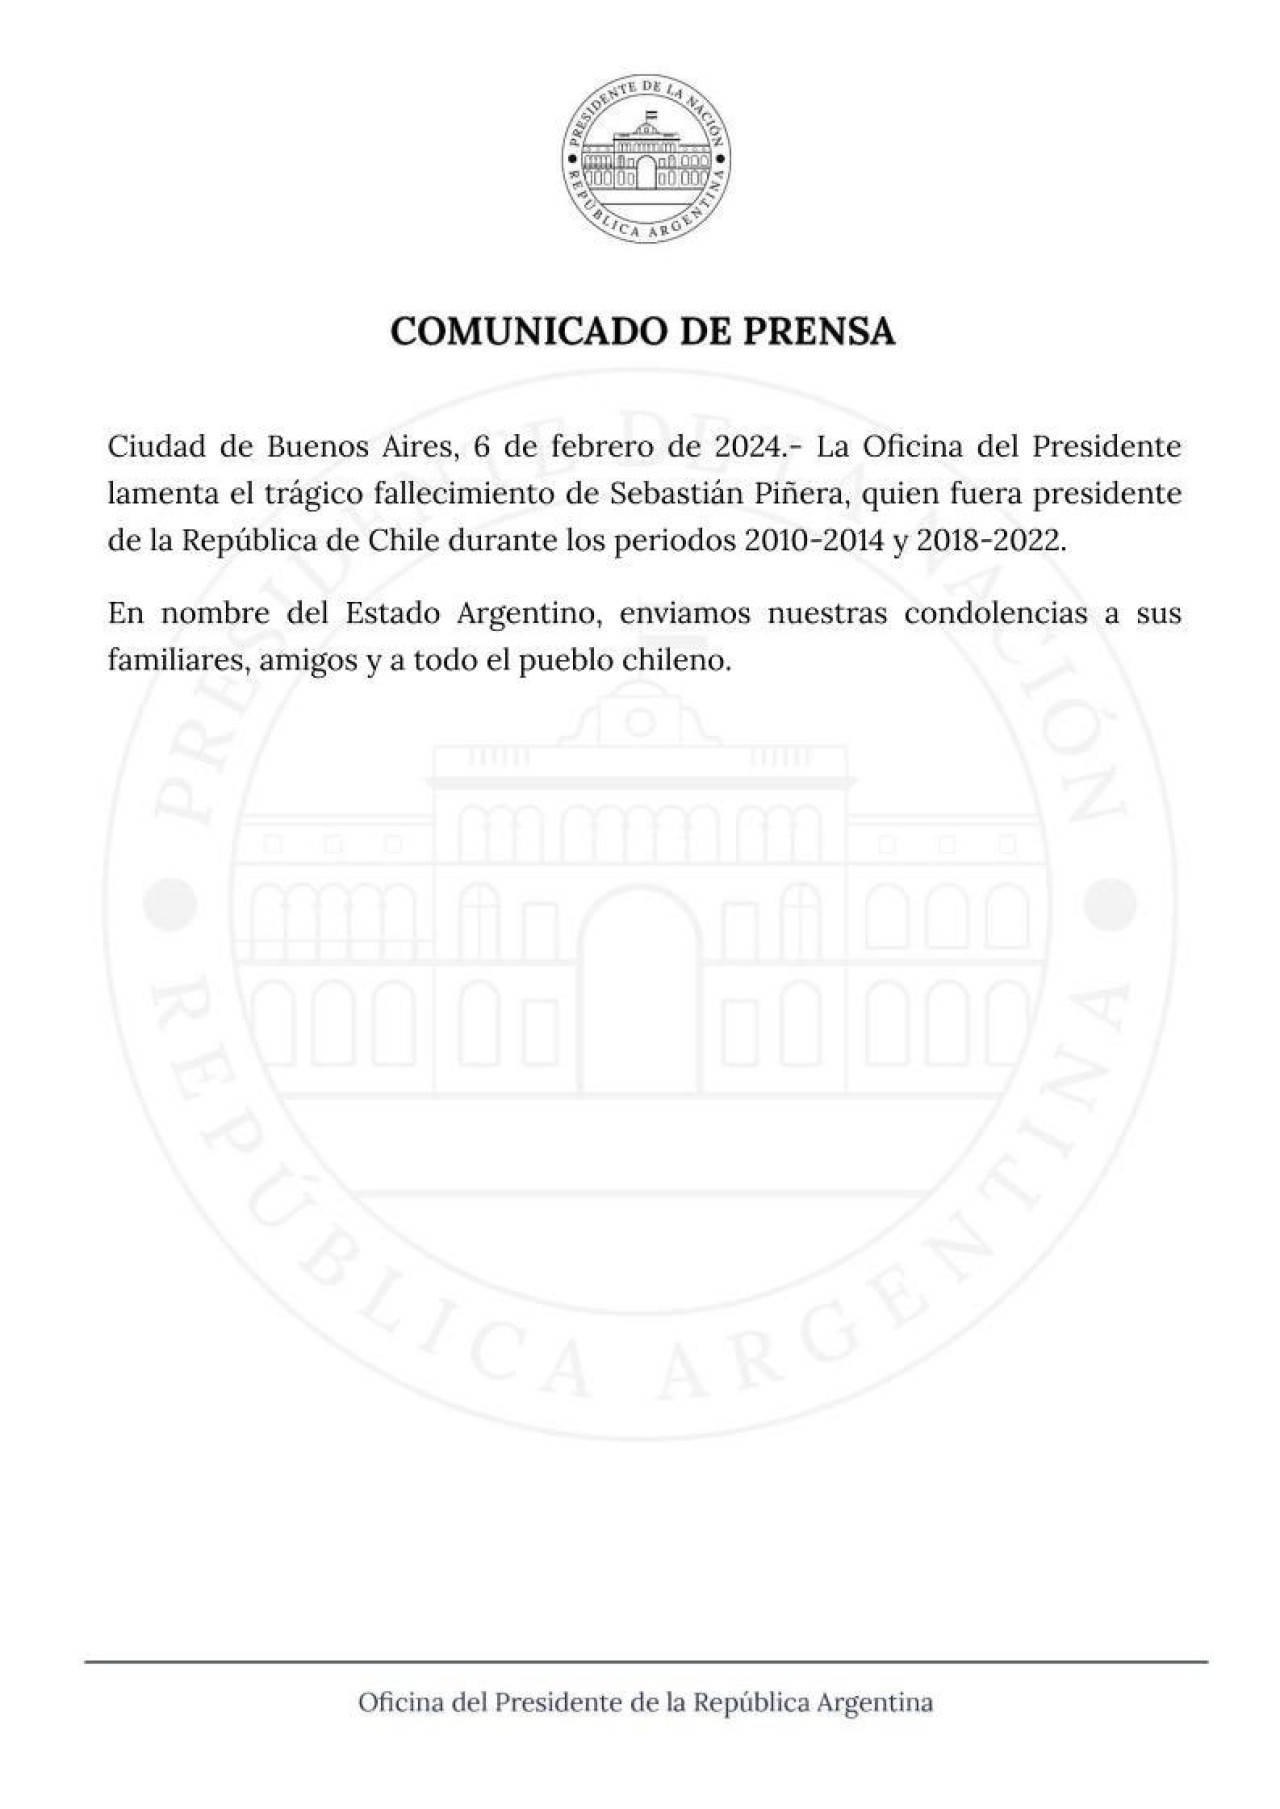 Comunicado del Gobierno por la muerte de Piñera